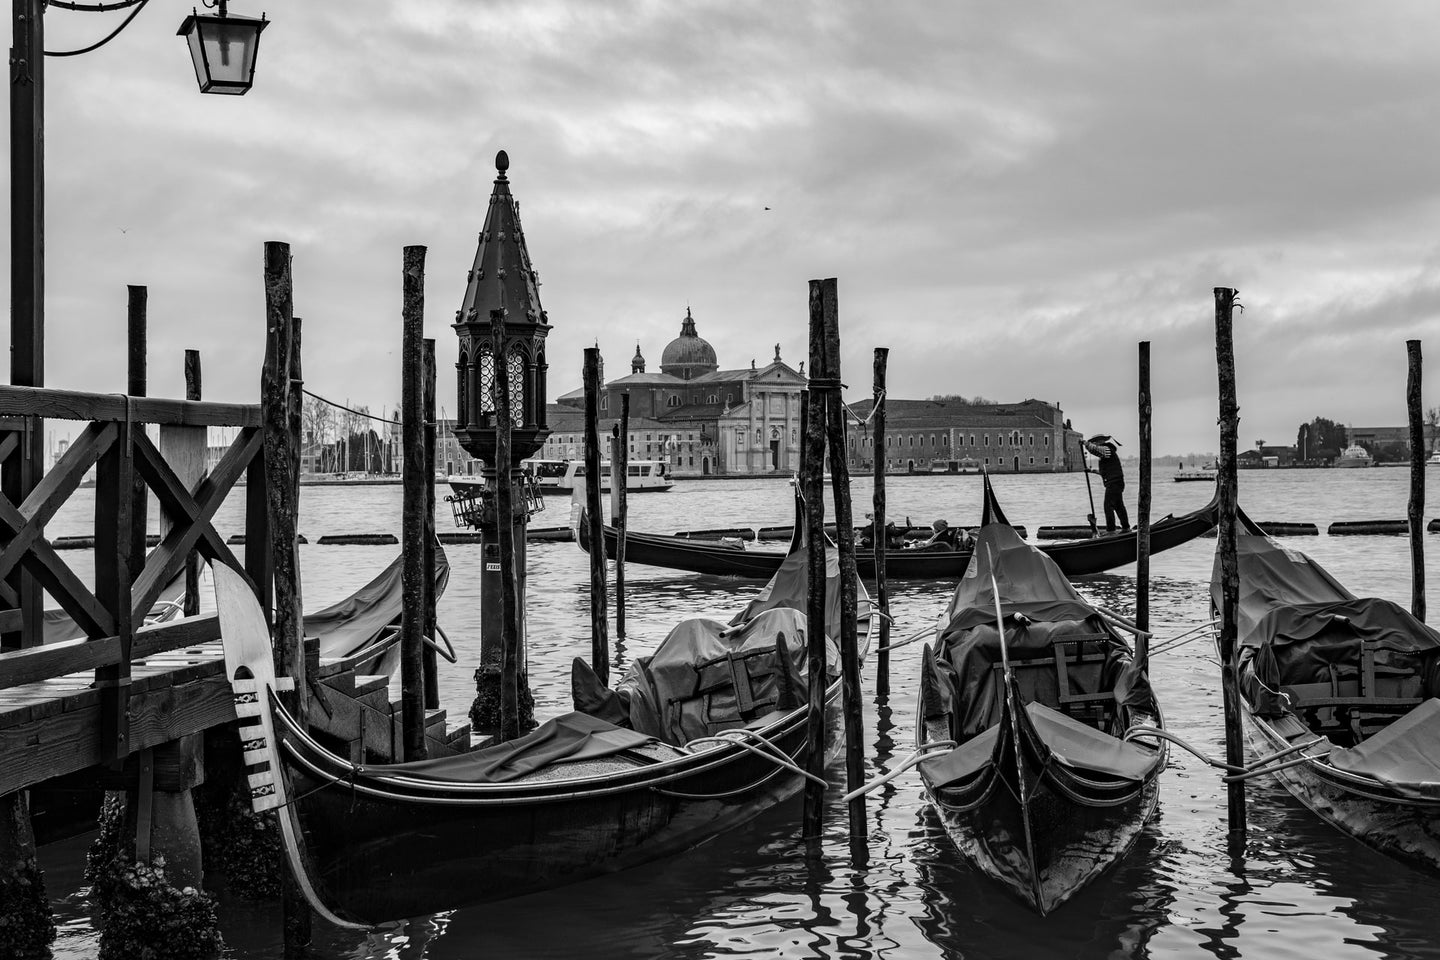 A black and white photo of gondolas in Venice